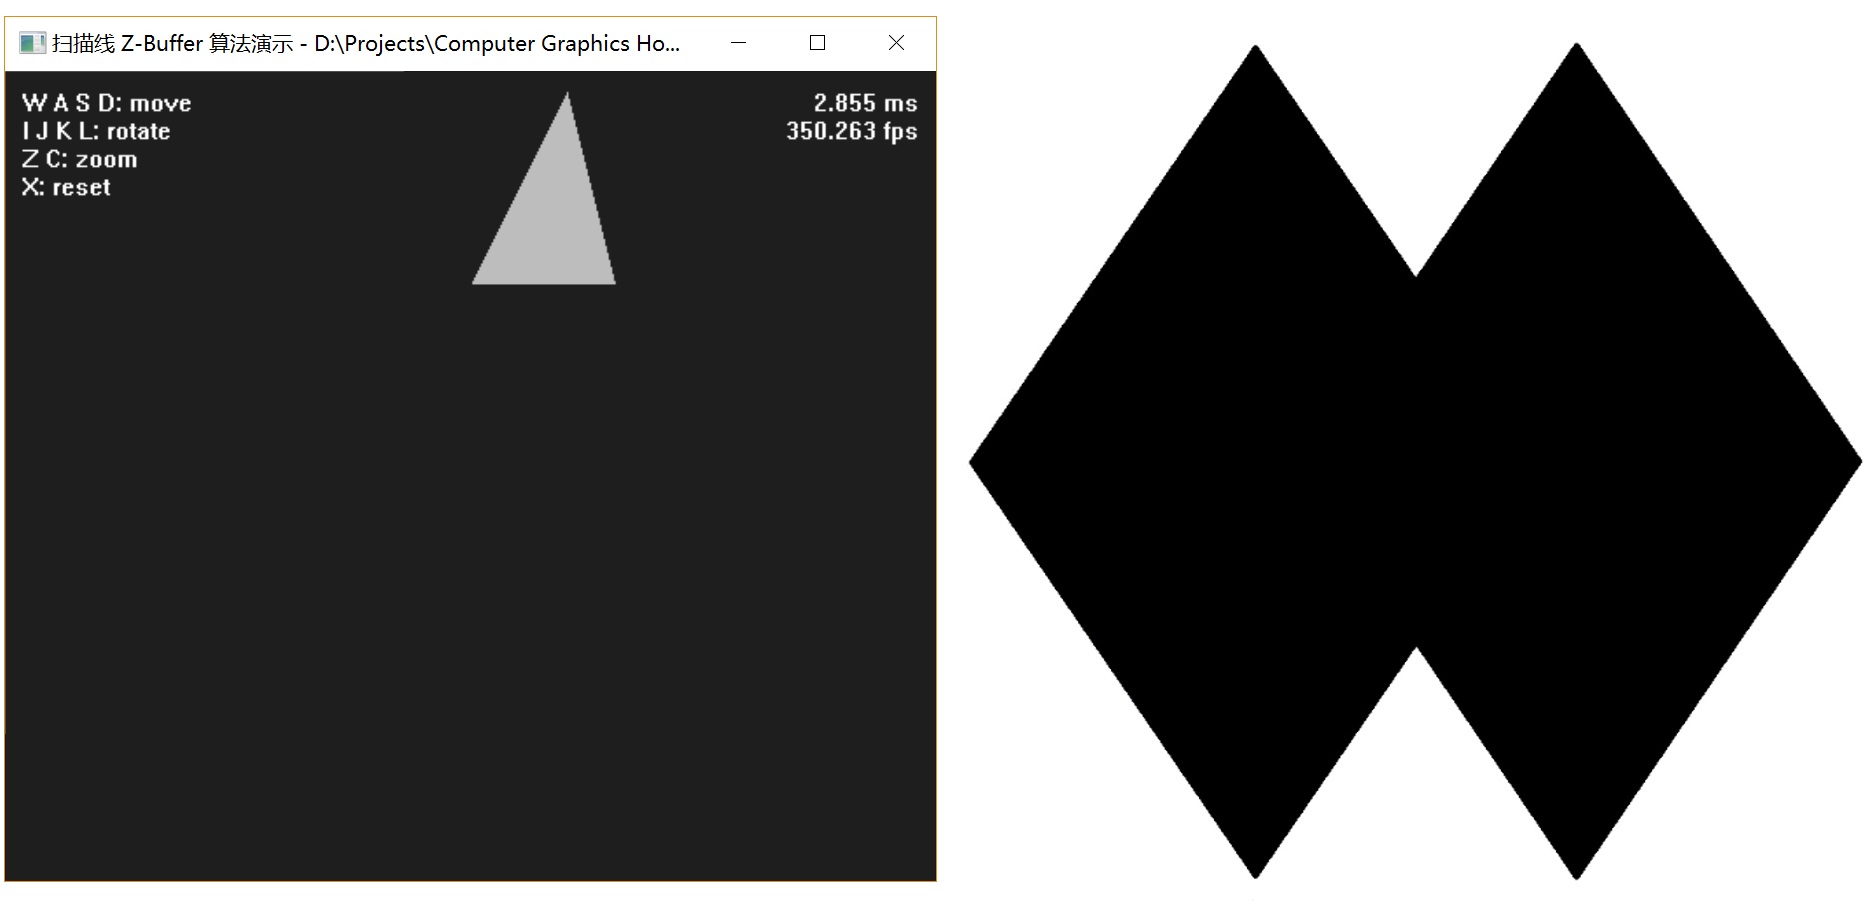 图 7-2 凹多边形显示问题，左图为实际结果，右图为理论图像